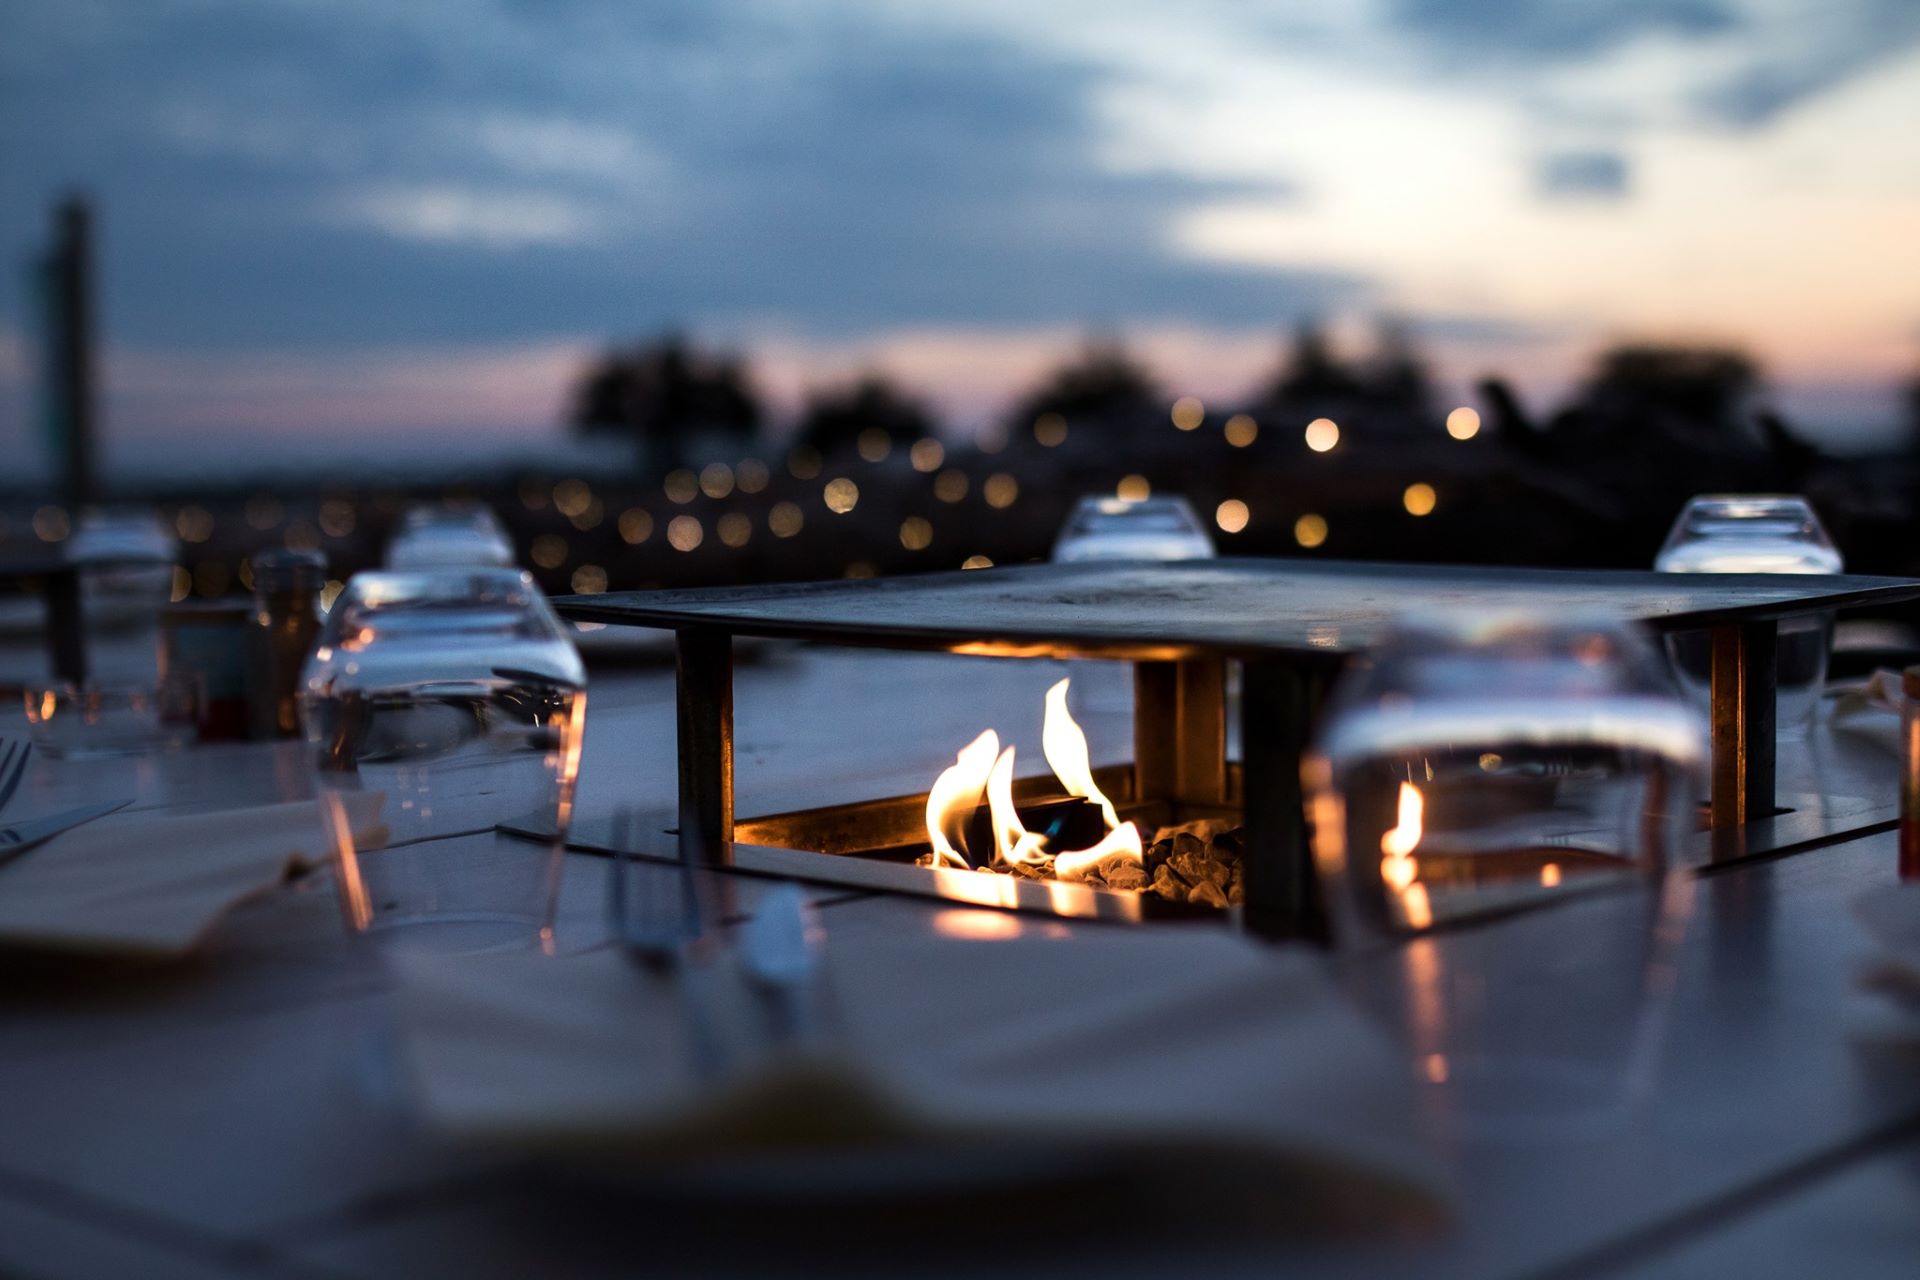 Sur la table cheminée danse des petites flammes pour réchauffer plat et personnes